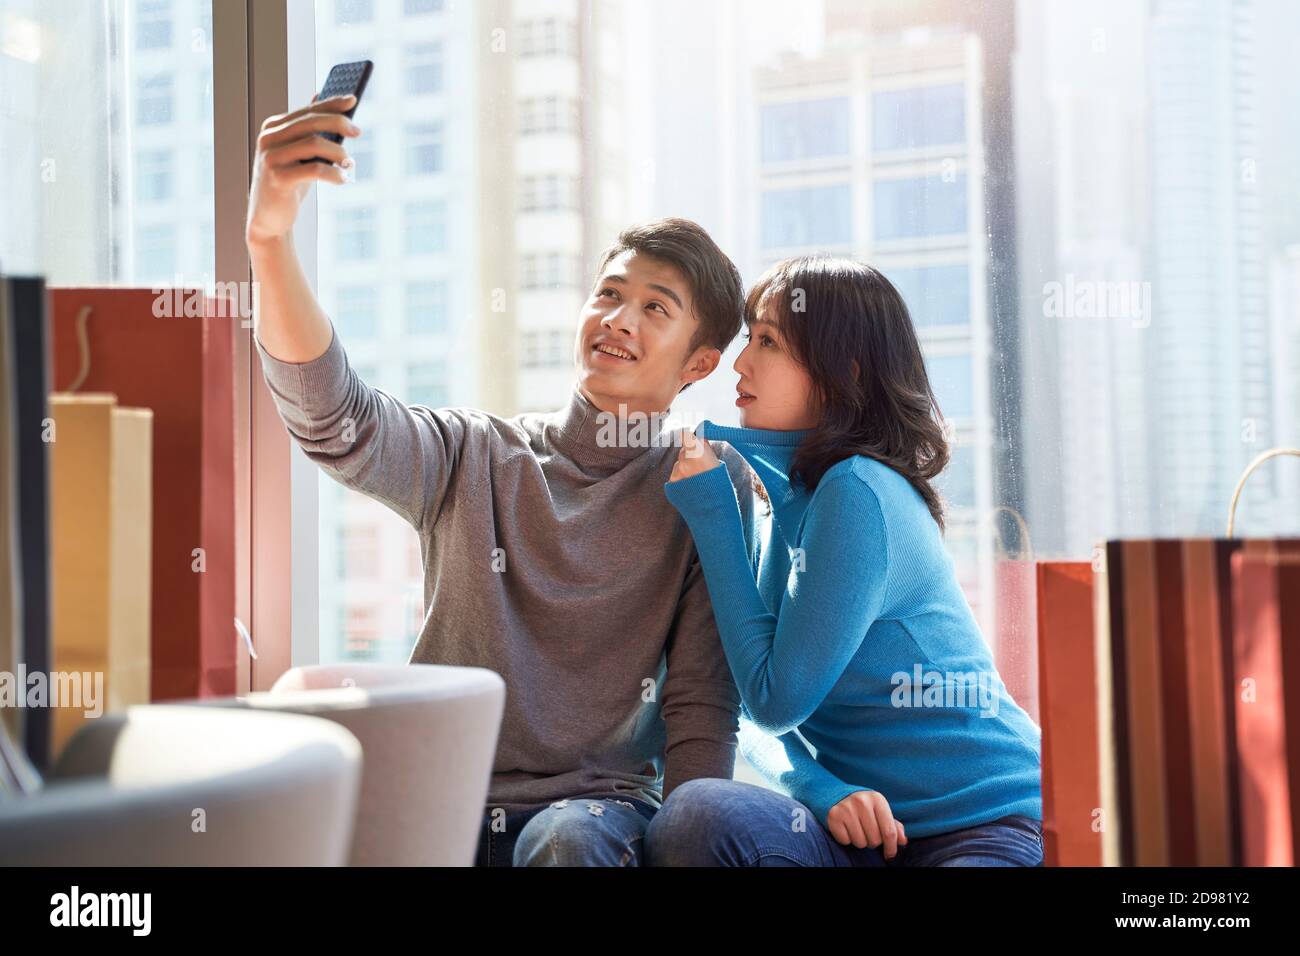 Glückliches junges asiatisches Paar, das ein Selfie im Hotelzimmer macht Nach dem Einkaufen in der Stadt Stockfoto